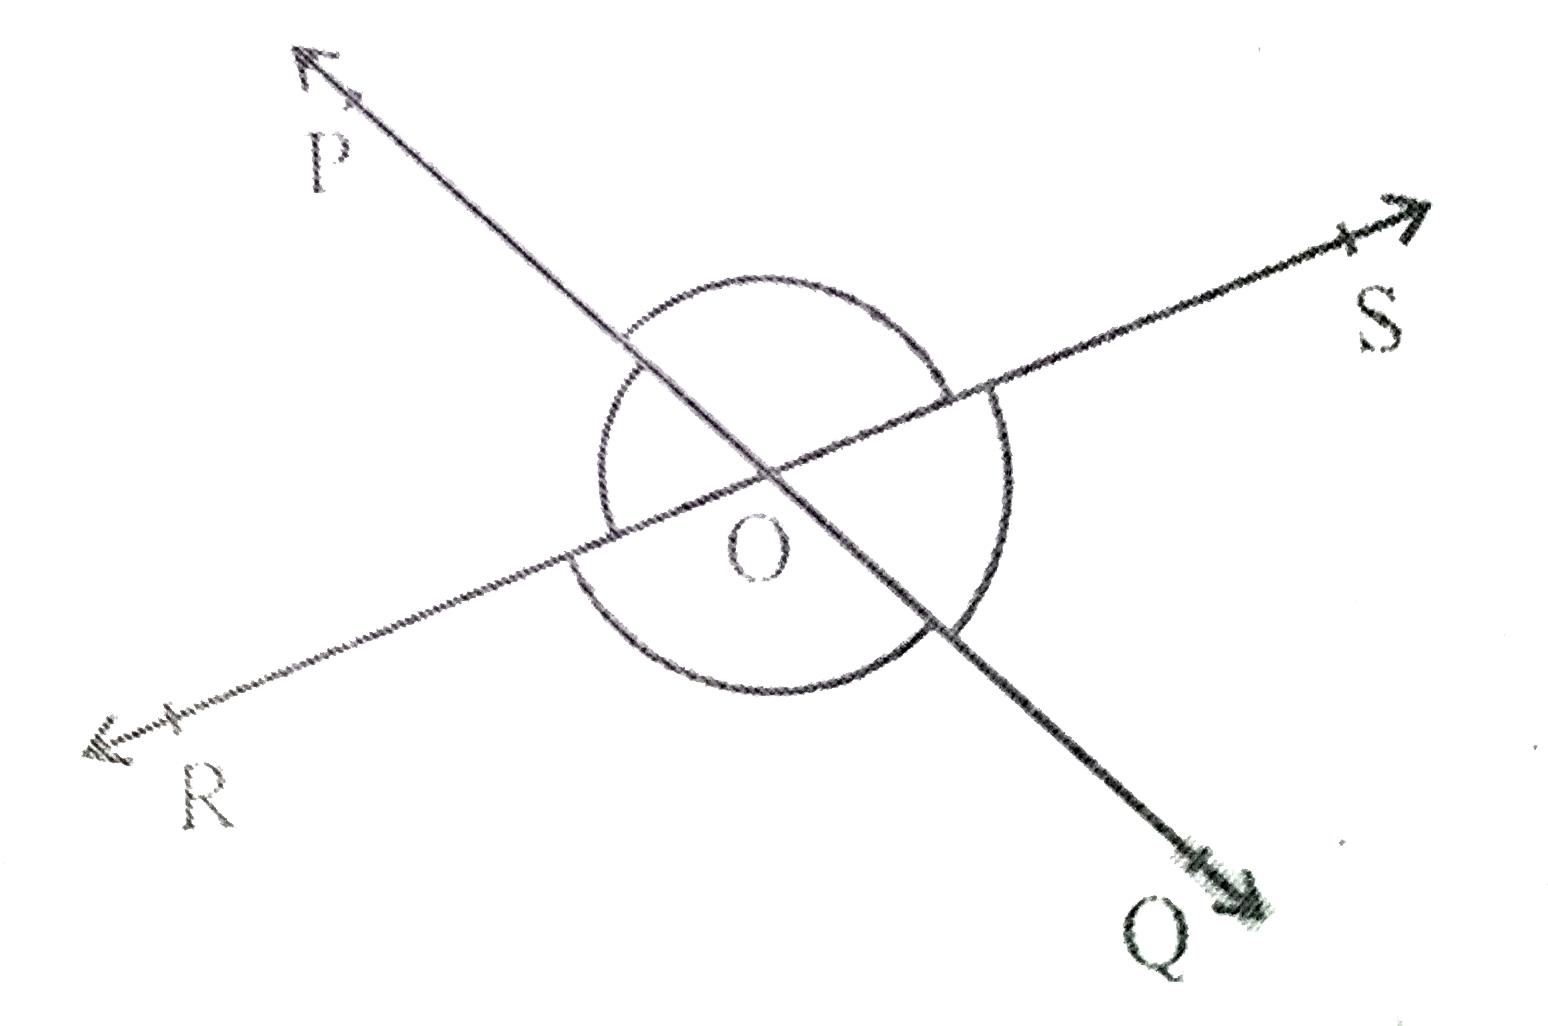 आकृति 6.9  में ,रेखाएँ PQ  और RS  परस्पर बिंदु O  प्रतिछेद करती हैं । यदि angle POR: angle ROQ=5:7  है, तो सभी कोण ज्ञात कीजिये ।